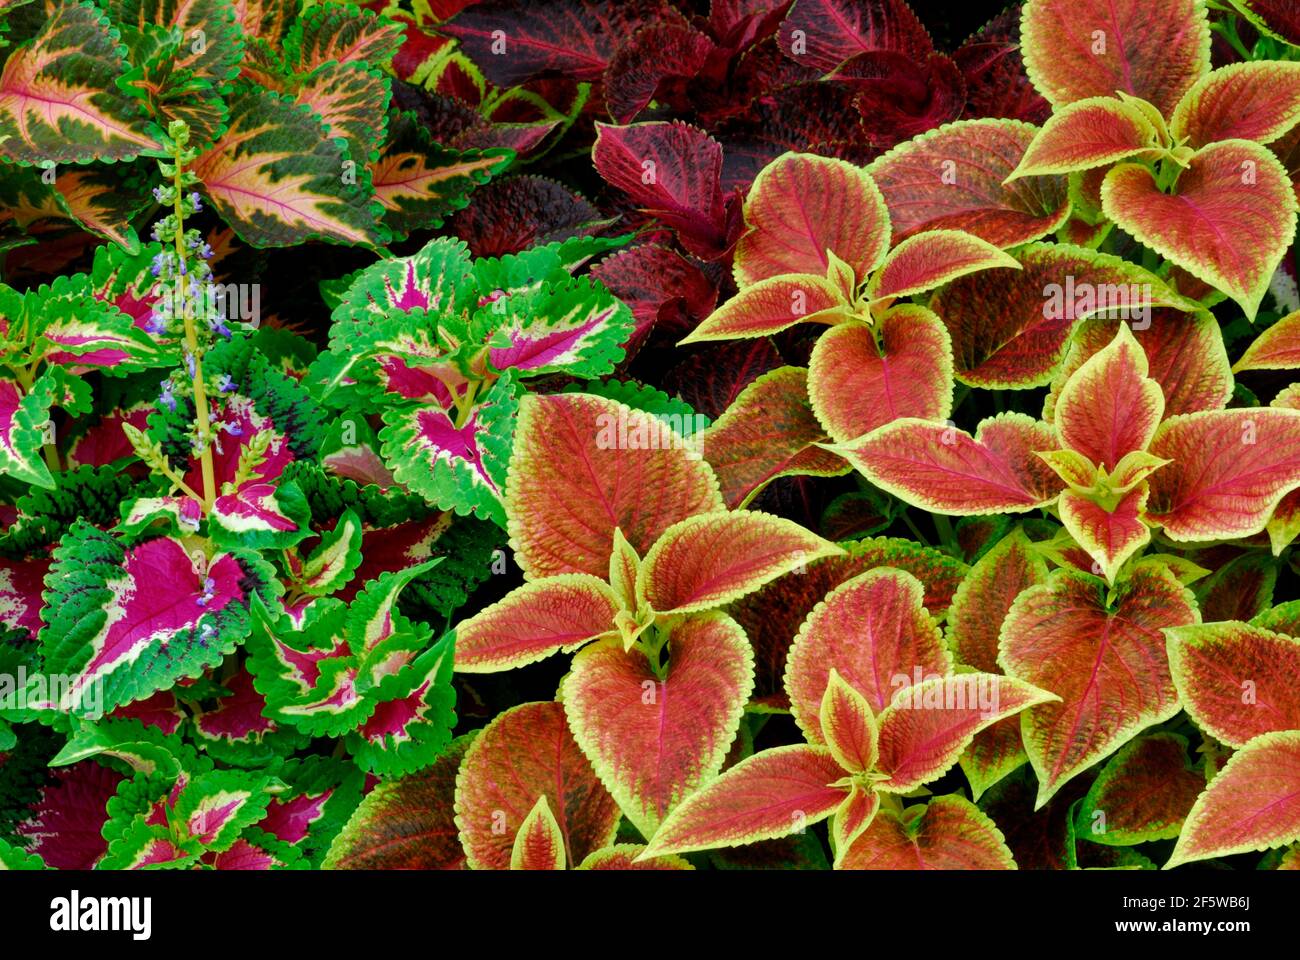 Coleus nettle (Solenostemon scutellarioides) Leaf, leaves, plants, garden plants, Lamiaceae (Lamiaceae) Labiatae, ornamental plants, colourful Stock Photo